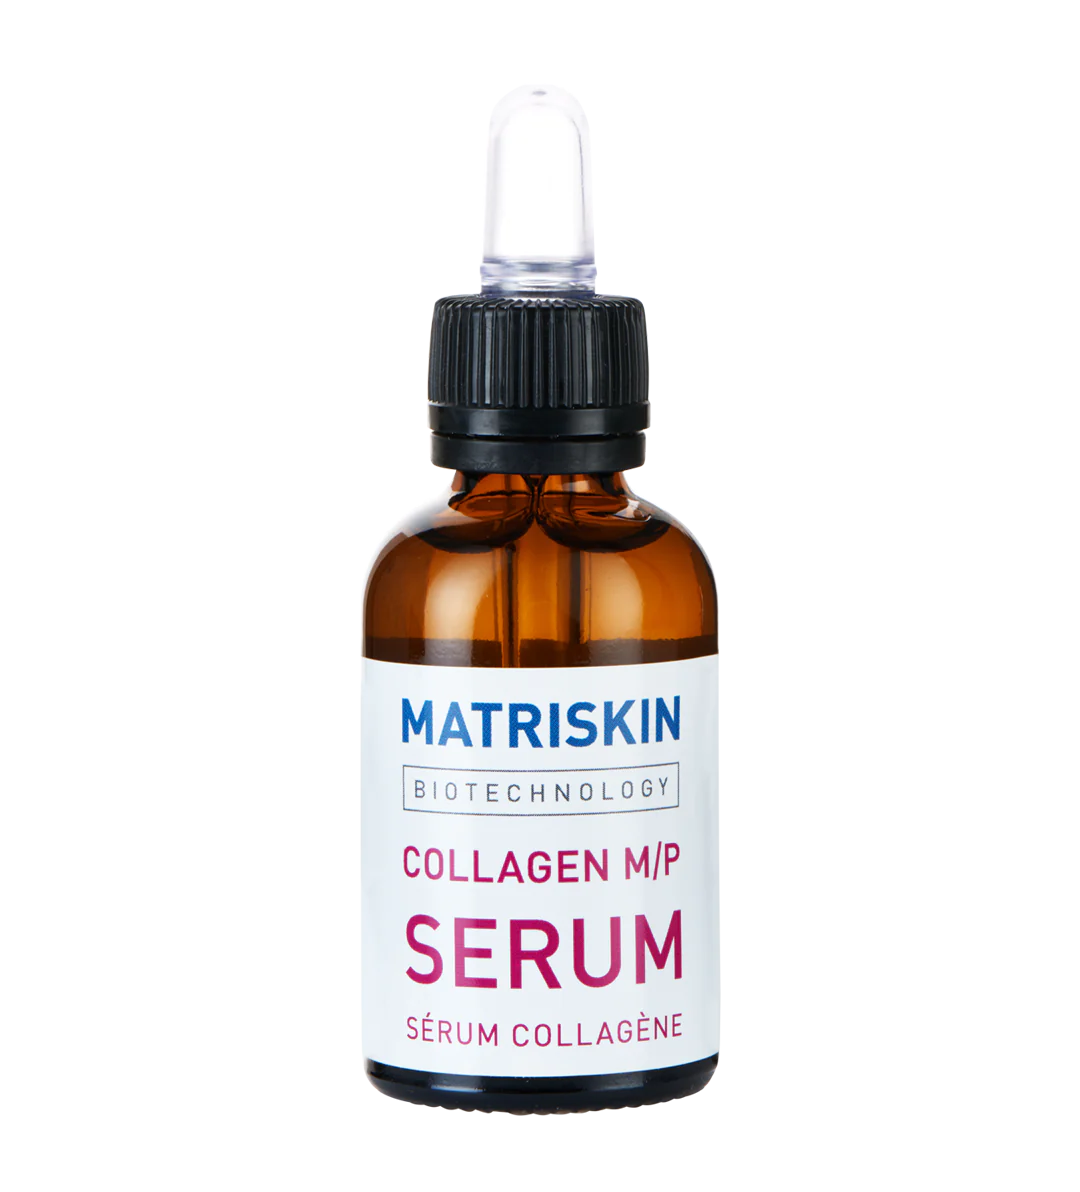 Matriskin Collagen M/P Serum 30ml